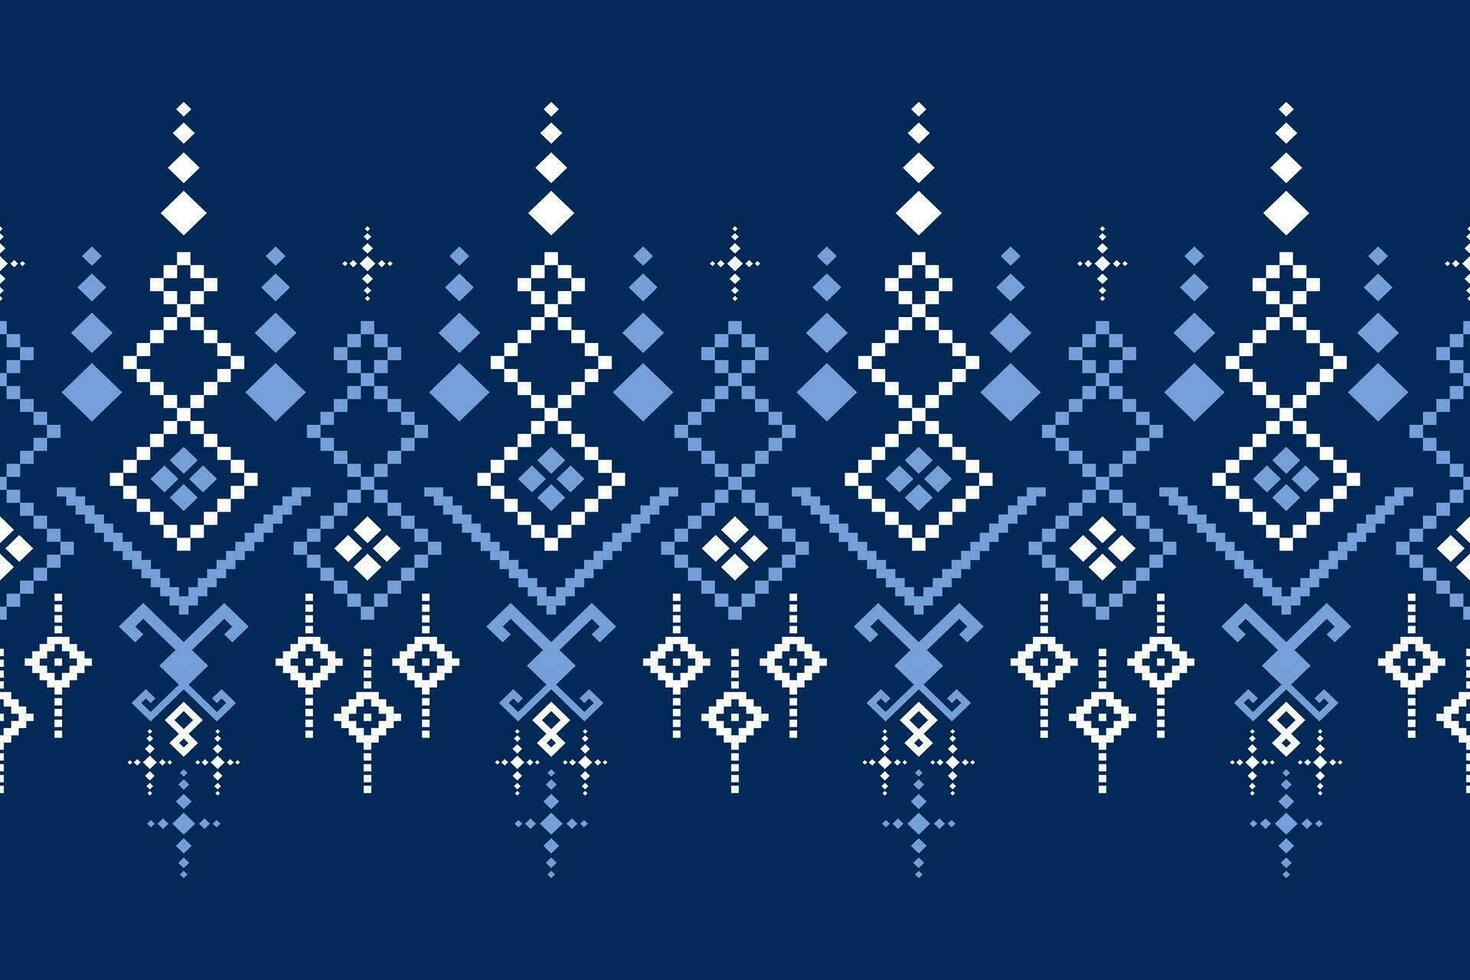 índigo Armada azul geométrico tradicional étnico modelo ikat sin costura modelo frontera resumen diseño para tela impresión paño vestir alfombra cortinas y pareo de malasia azteca africano indio indonesio vector